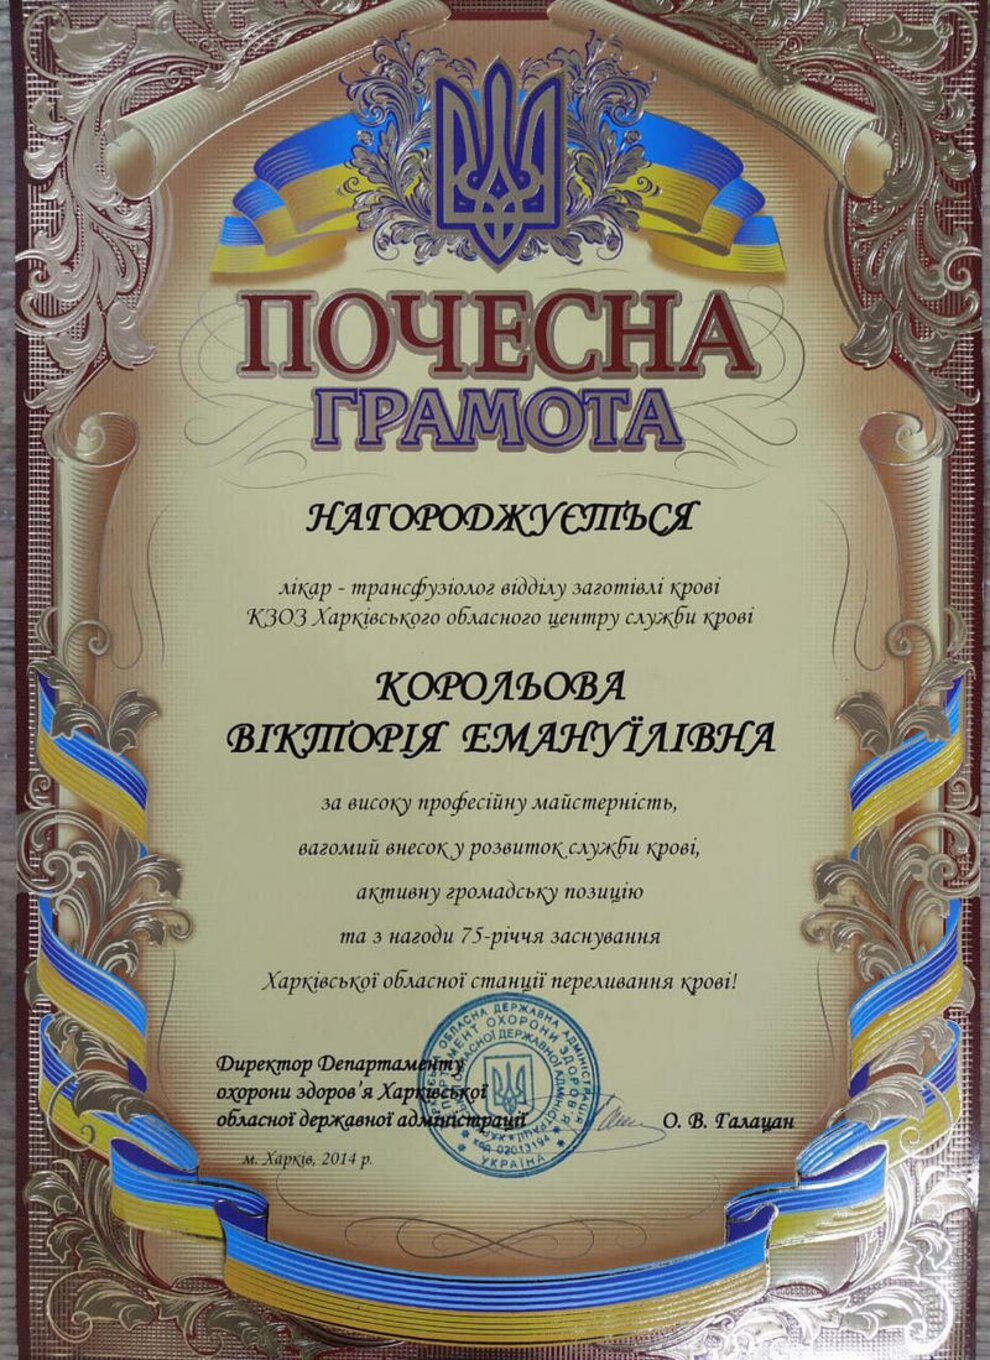 certificates/korolova-viktoriya-emanuyilivna/hemomedika-cert-koroleva-04.jpg